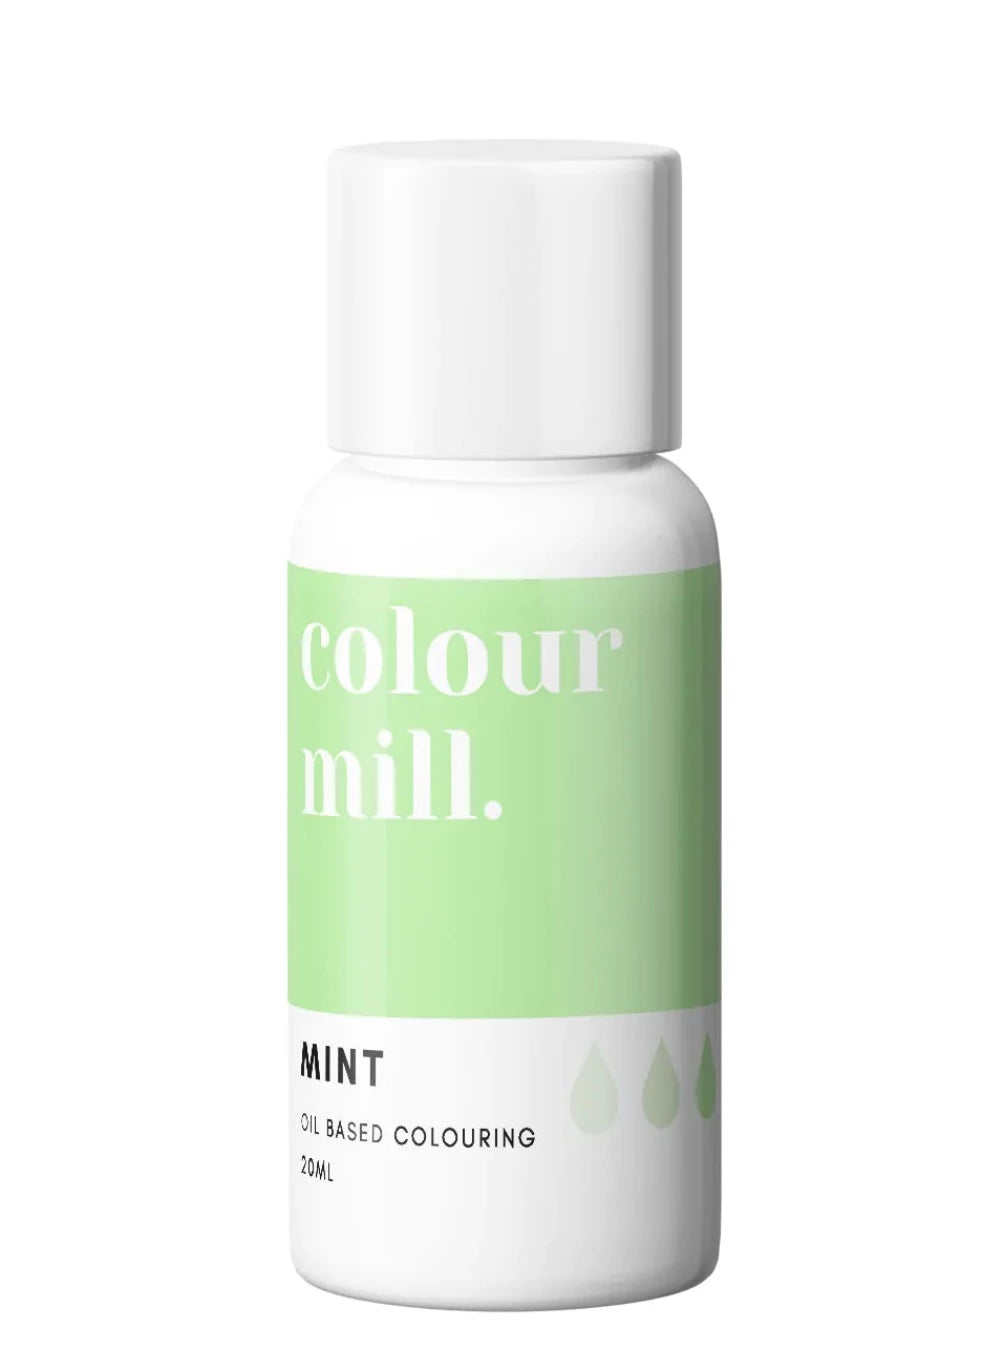 Mint colour mill, colour mill, mint colour mill oil based, colour mill oil based, mint color, food color oil based, oil based color 